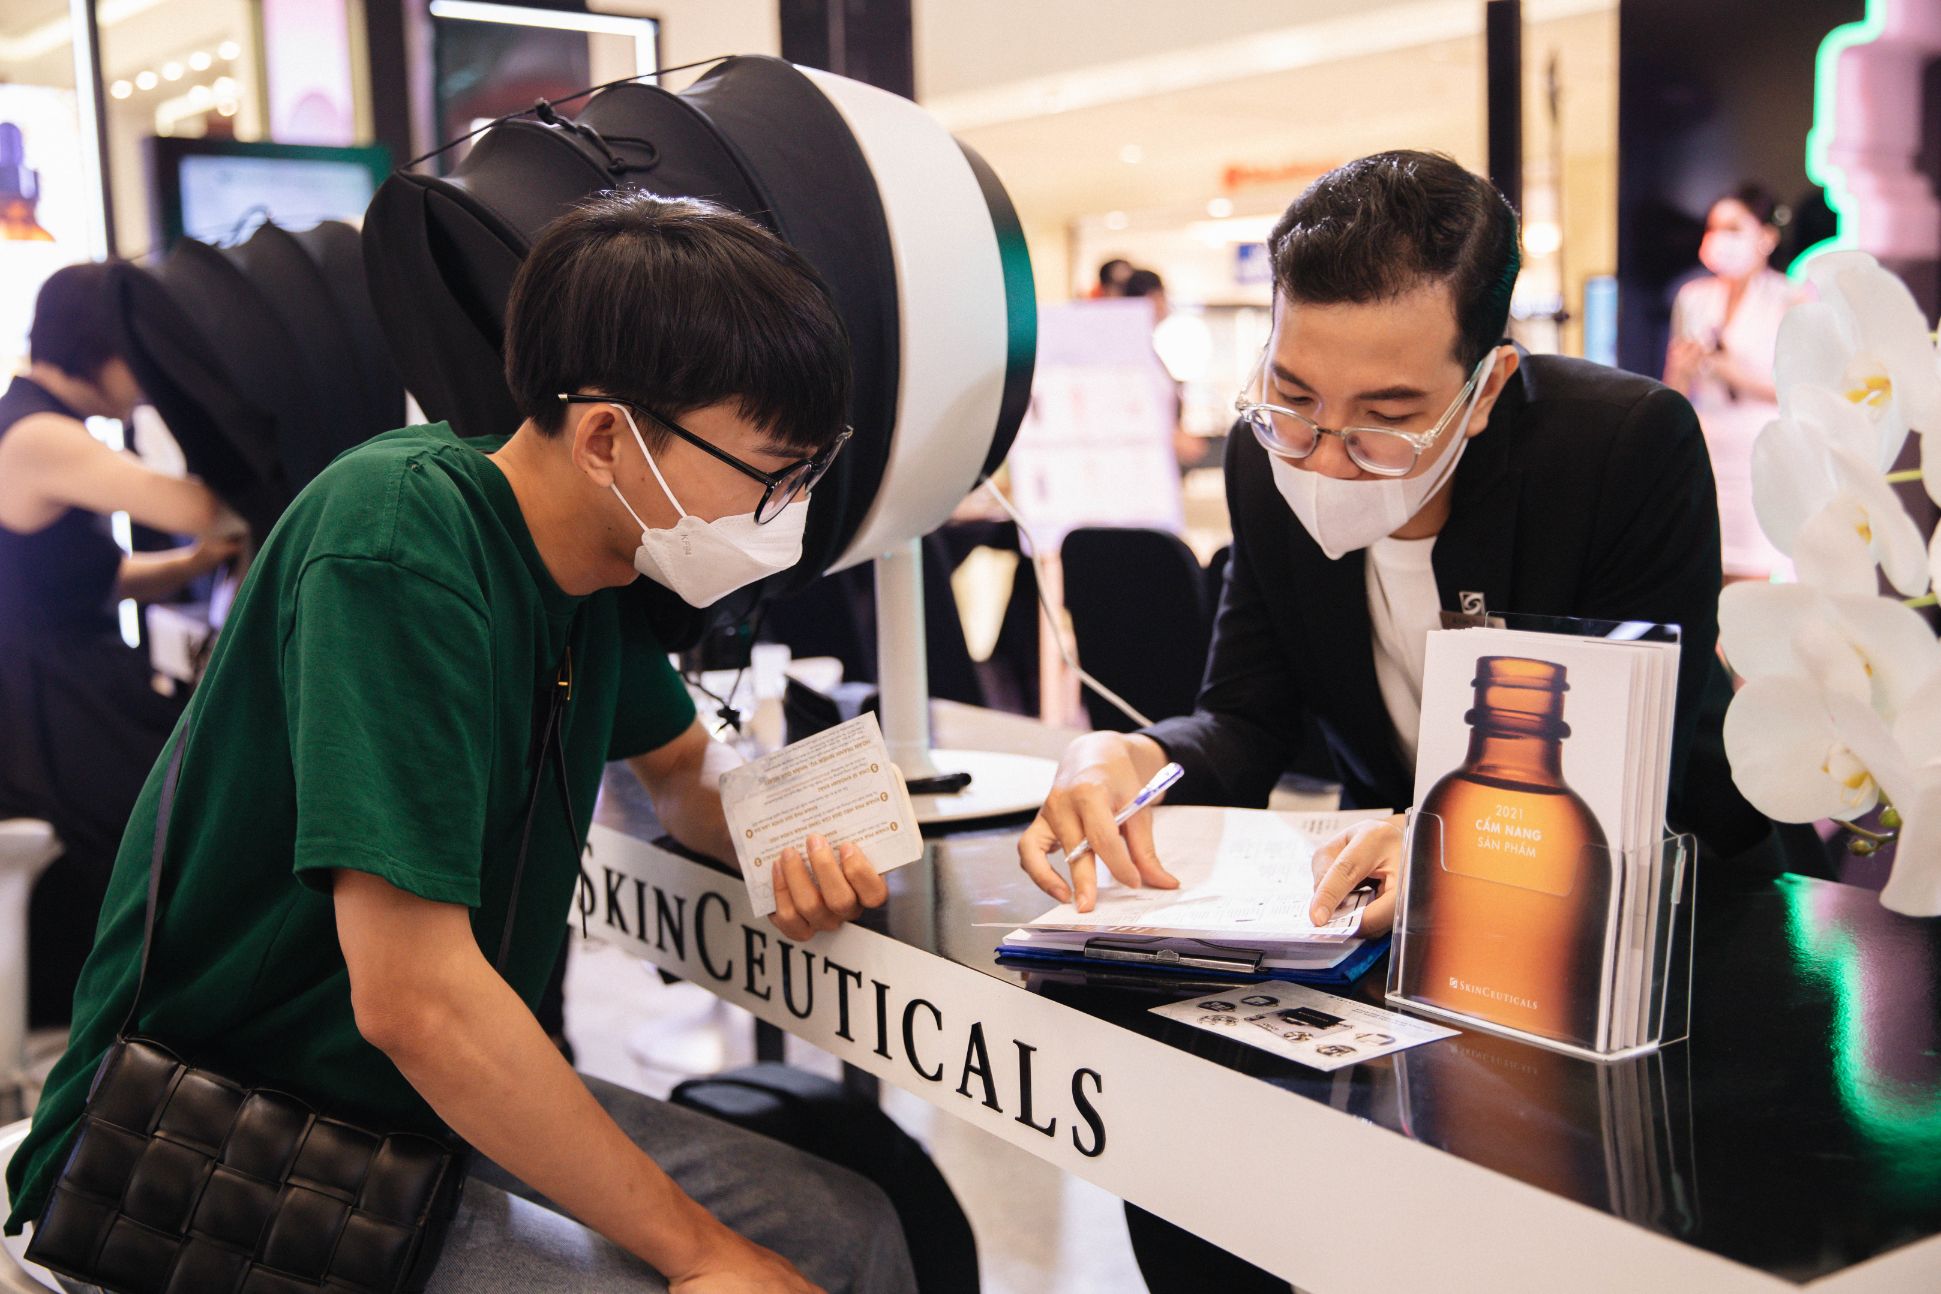 CỬA HÀNG SKIN CEUTICAL 2 Thương hiệu Dược Thẩm mỹ hàng đầu thế giới Skin Ceutical khai trương cửa hàng đầu tiên tại Việt Nam